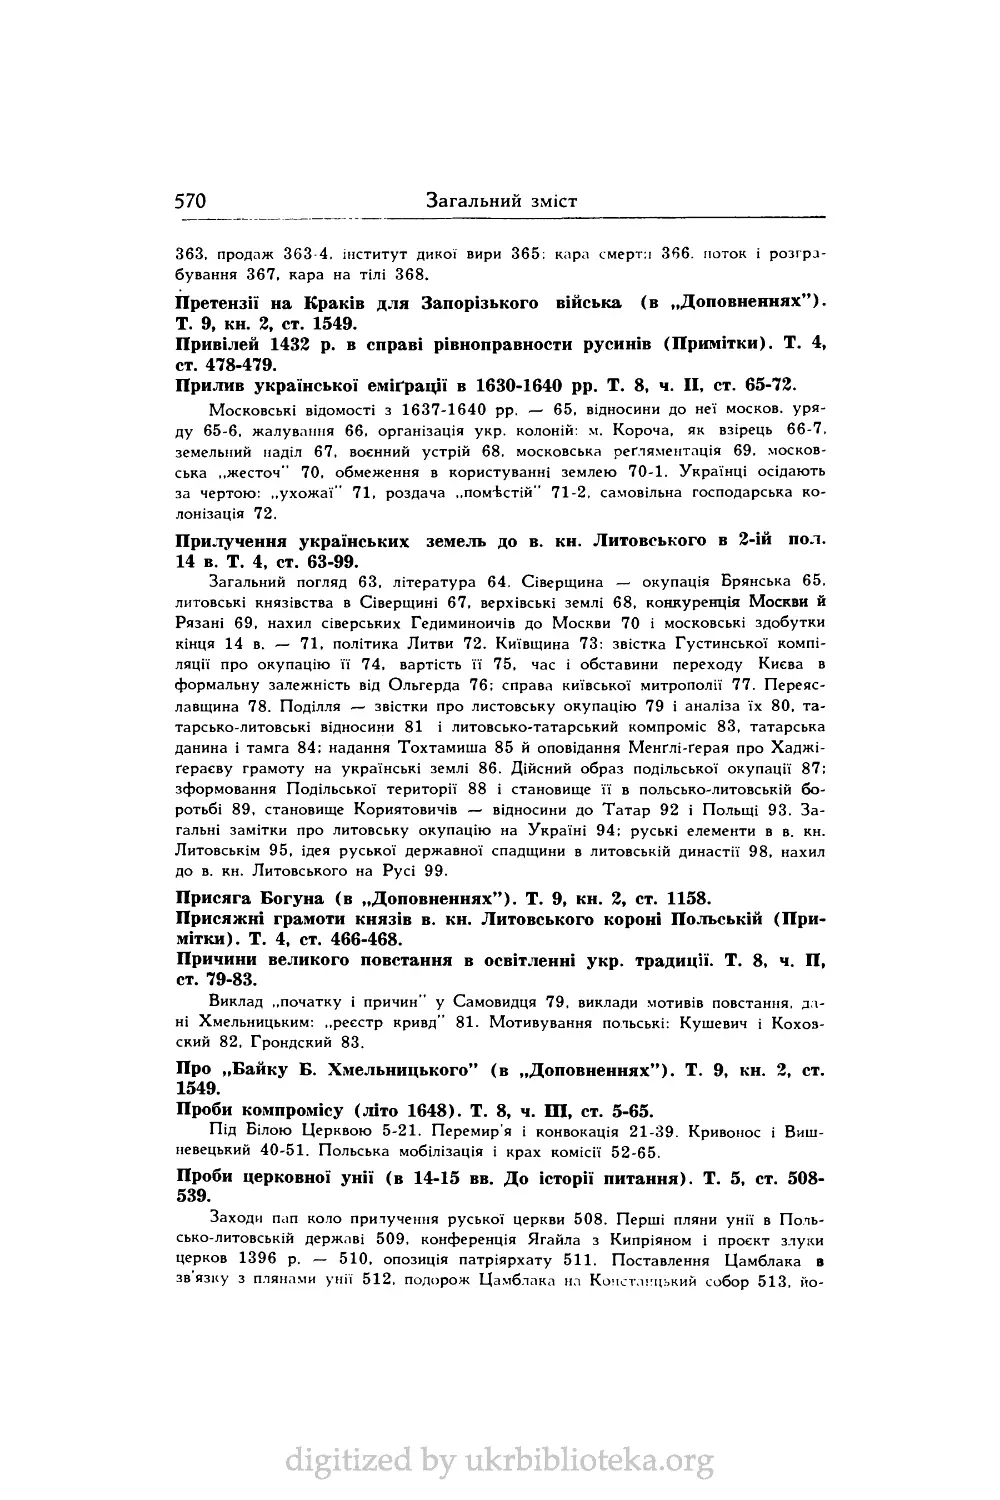 Прилучення українських земель до в. кн. Литовського в 2-ій пол. 14	в. Т. 4, ст. 63-99.